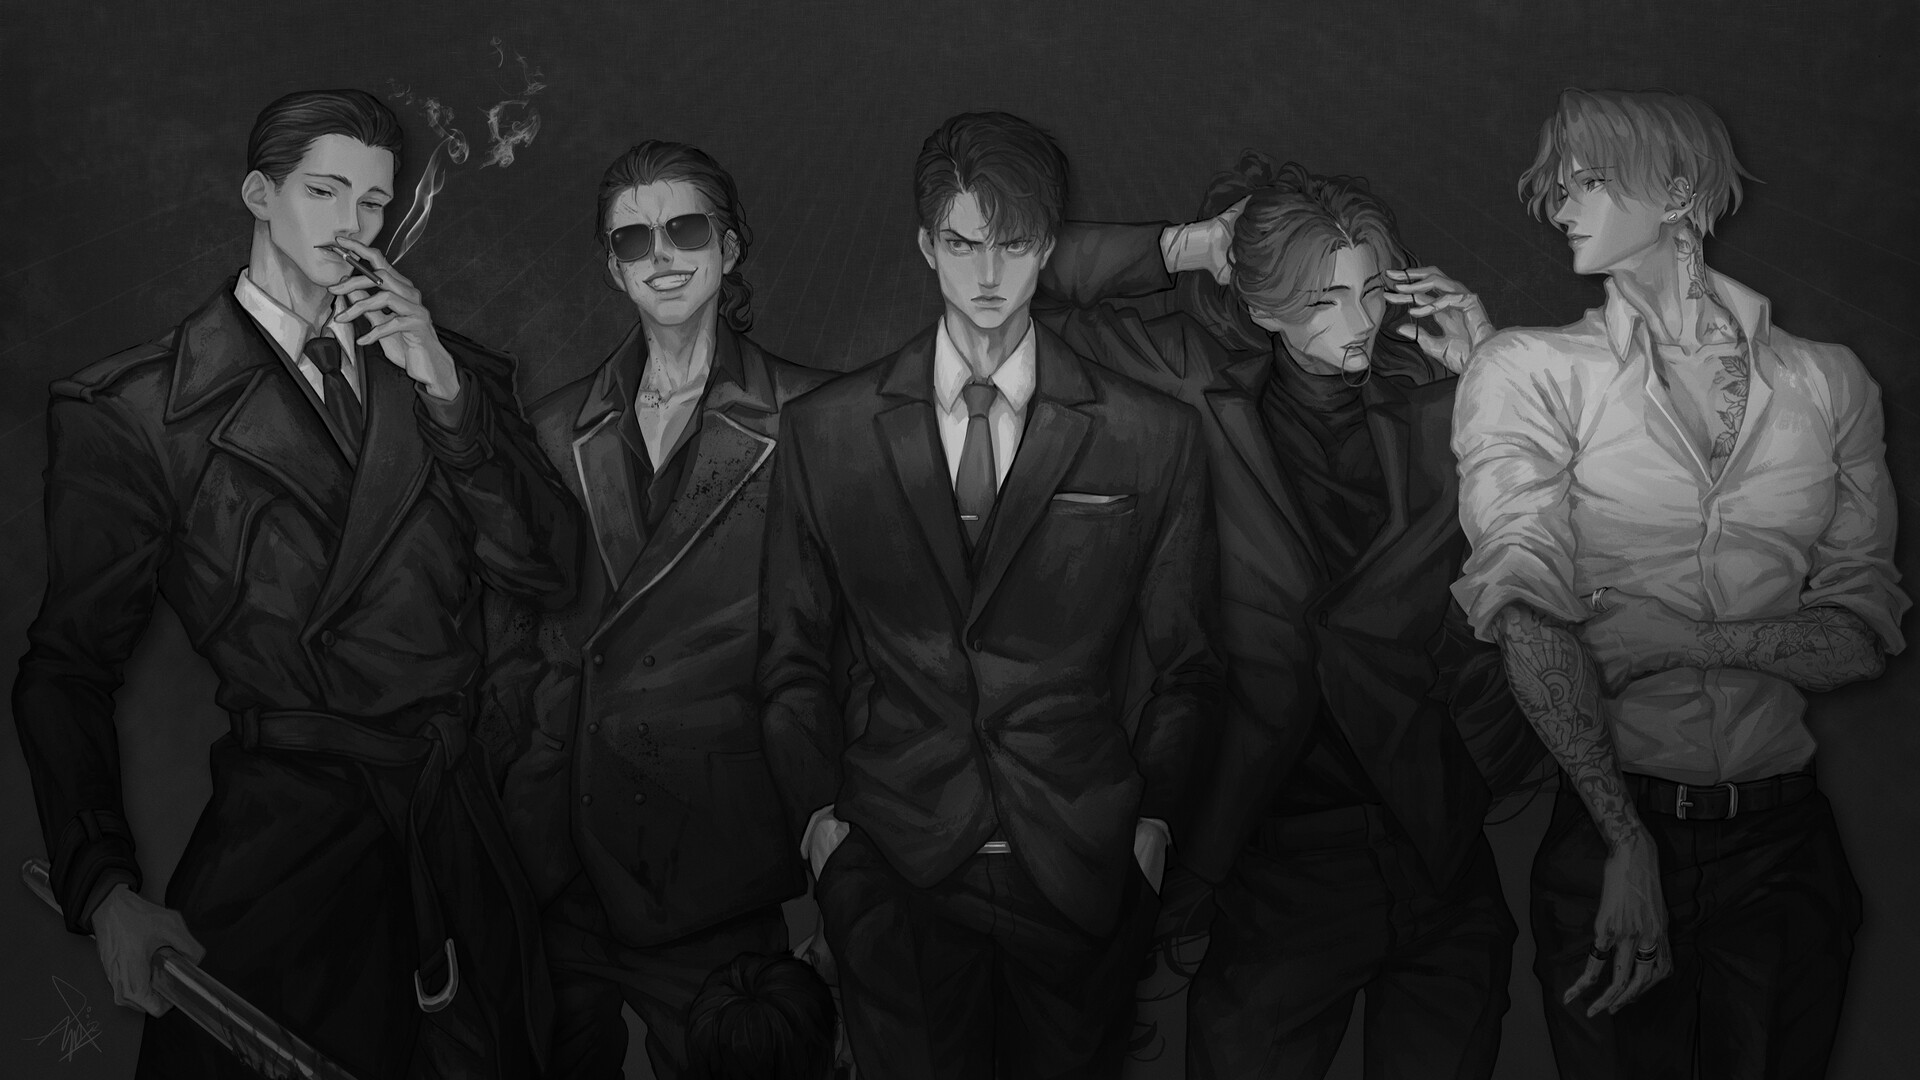 ArtStation - Men in Suits